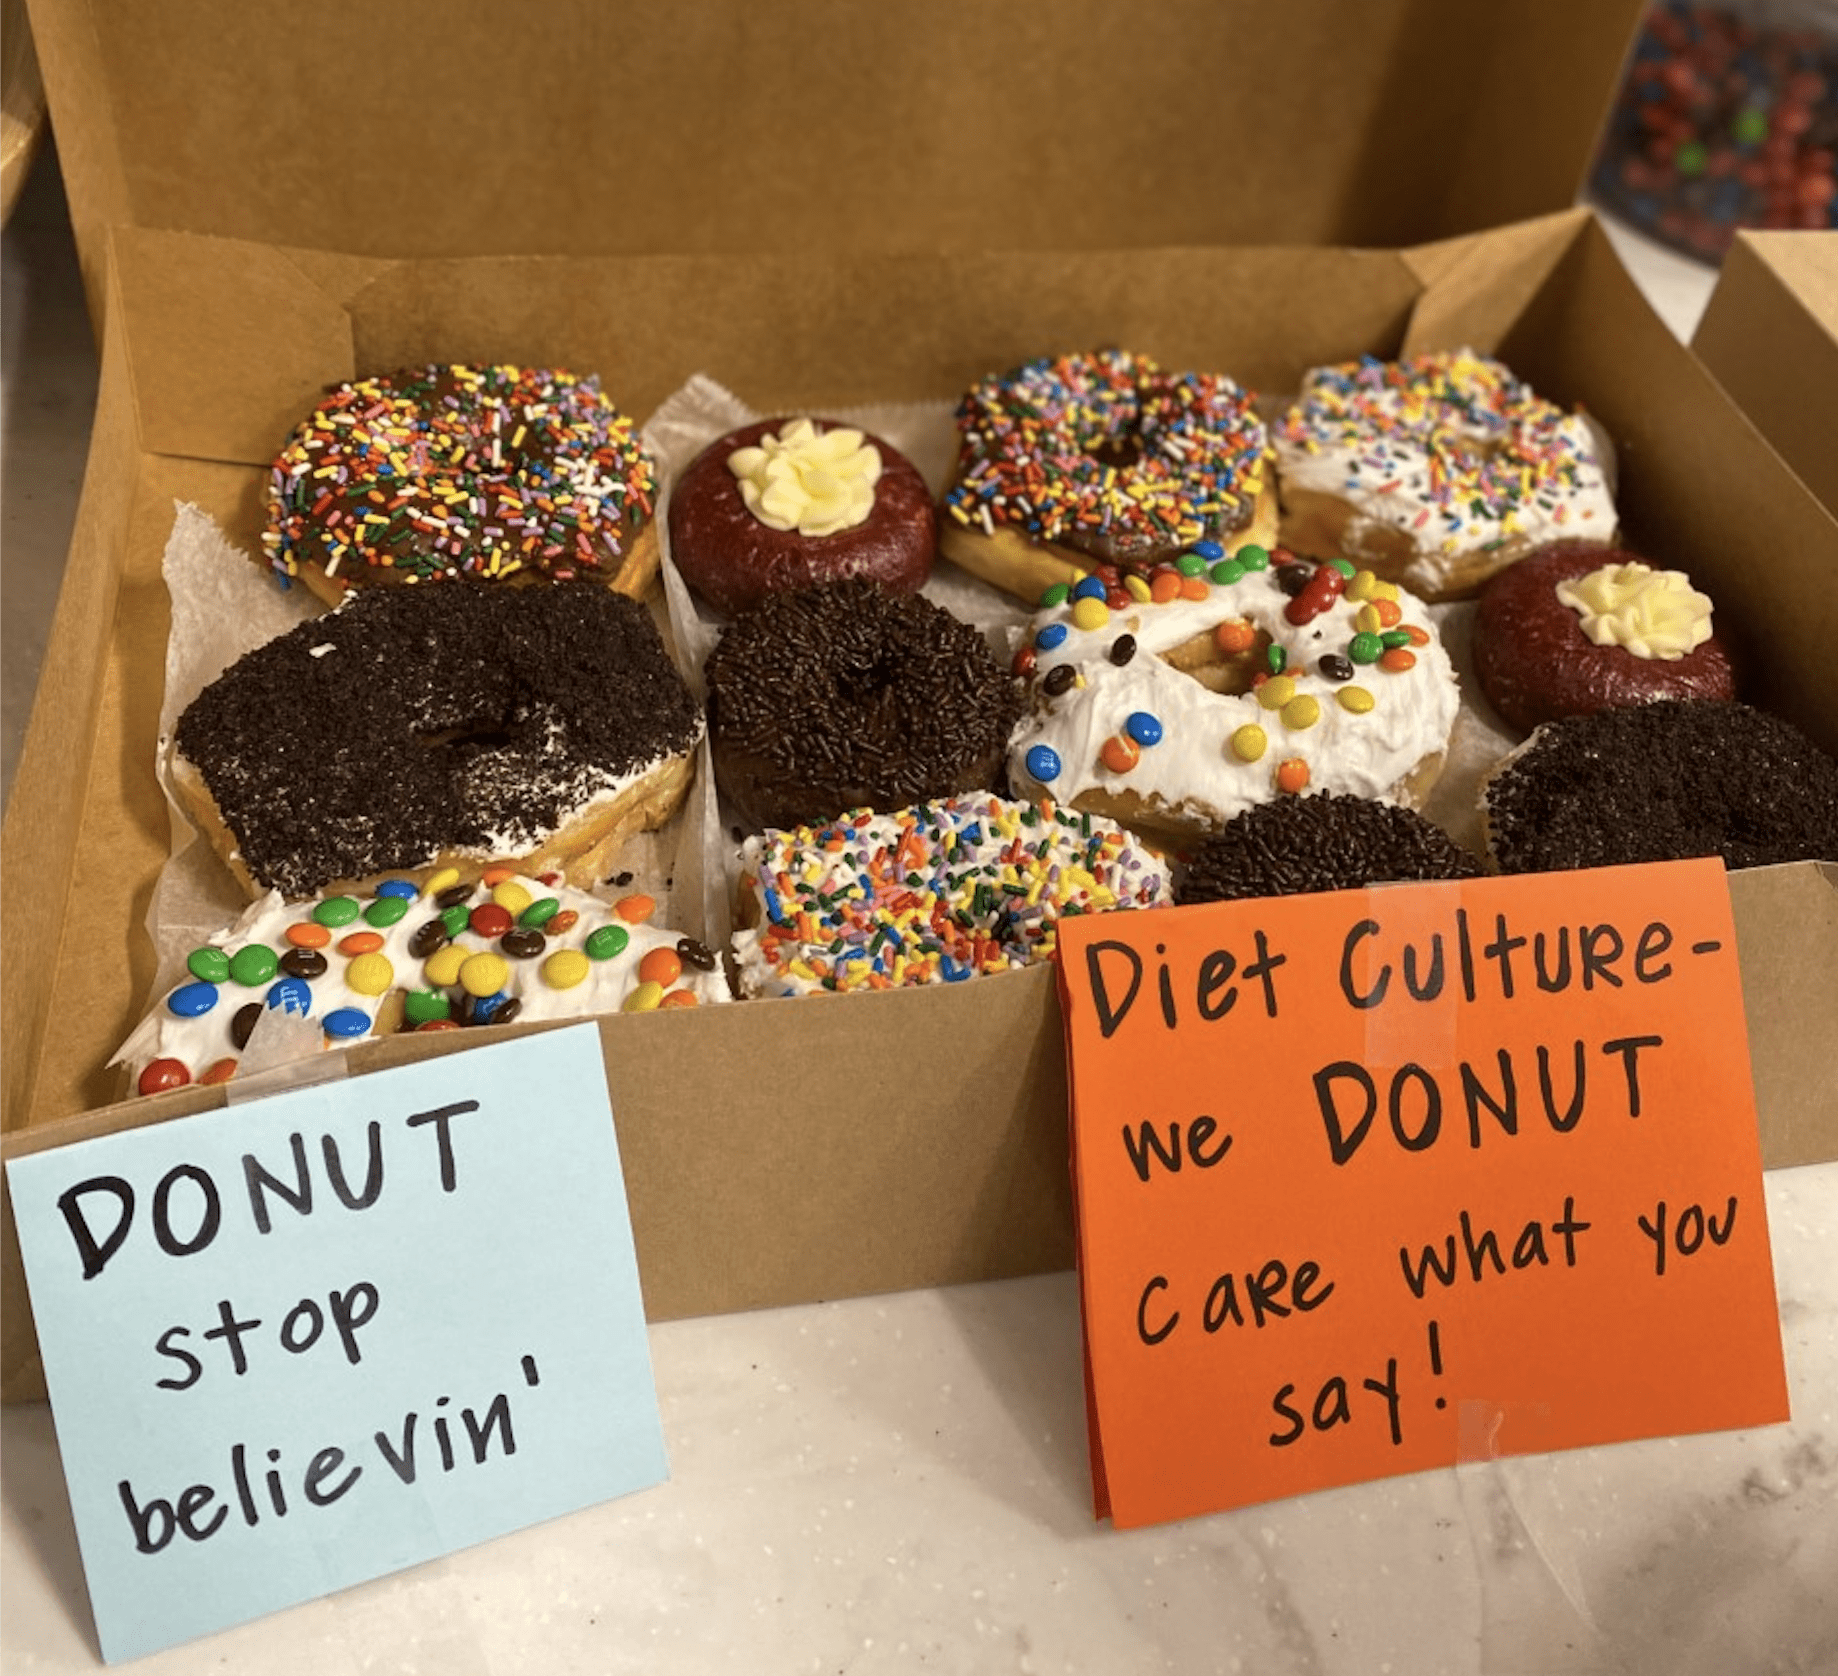 Donut Stop Believin' ...words to live by. #DietCultureSucks